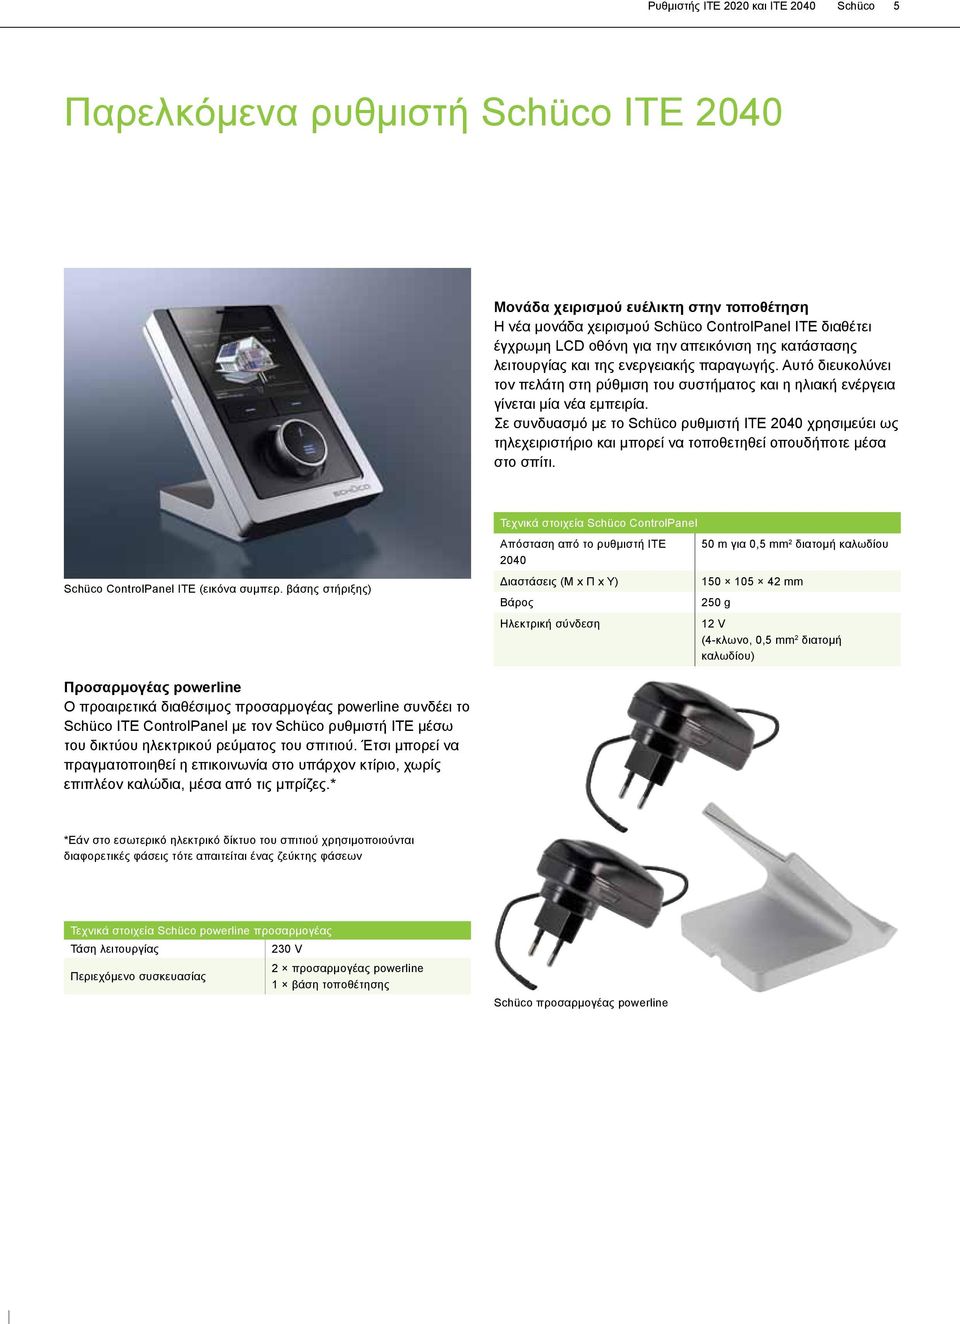 Σε συνδυασμό με το Schüco ρυθμιστή ΙΤΕ 2040 χρησιμεύει ως τηλεχειριστήριο και μπορεί να τοποθετηθεί οπουδήποτε μέσα στο σπίτι. Schüco ControlPanel ITE (εικόνα συμπερ.